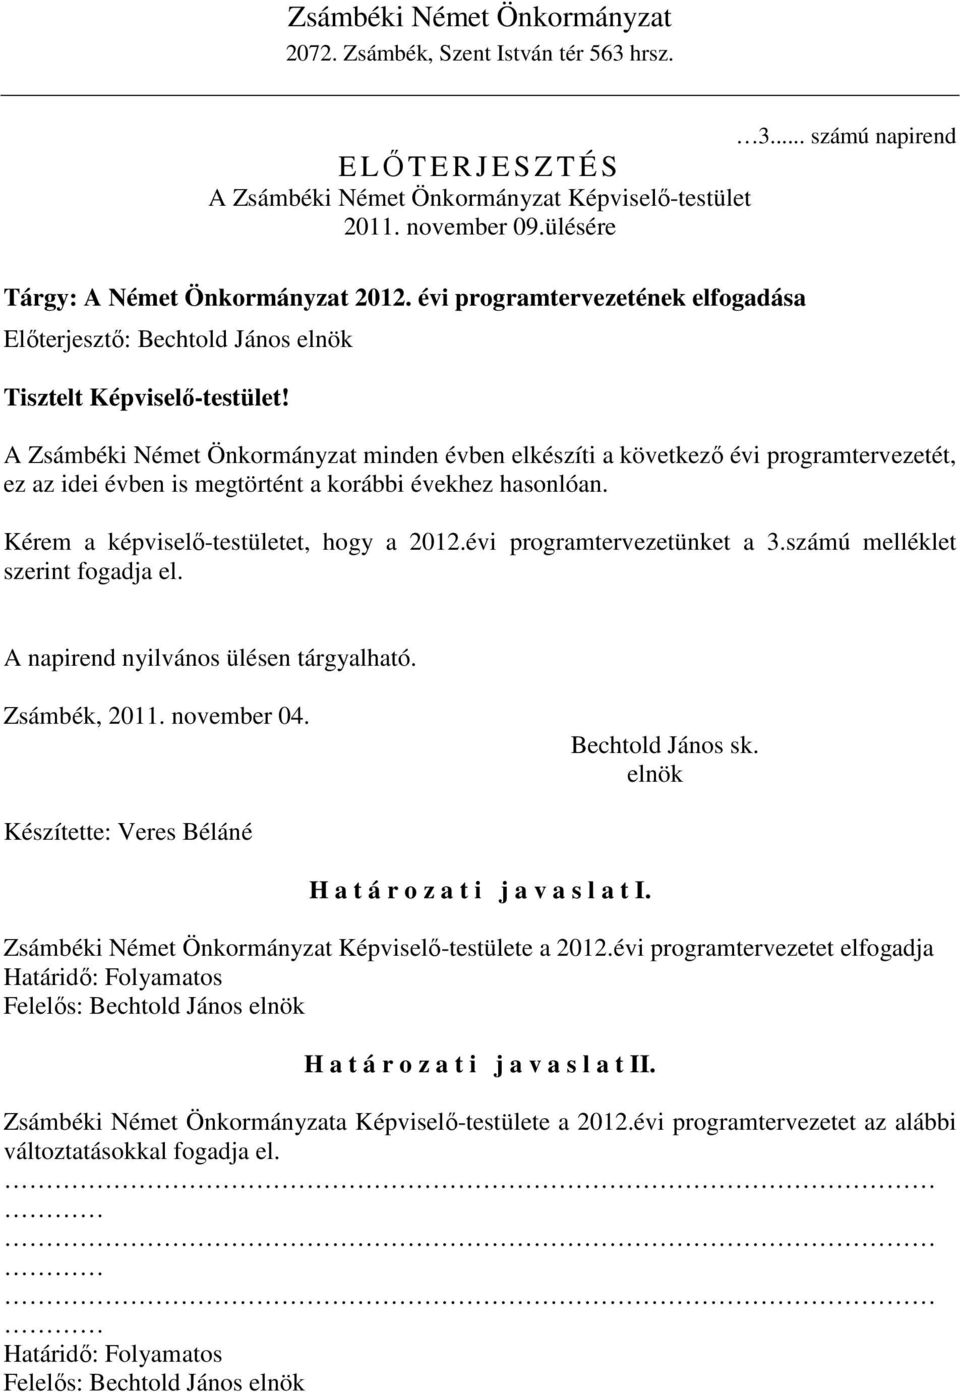 A Zsámbéki Német Önkormányzat minden évben elkészíti a következı évi programtervezetét, ez az idei évben is megtörtént a korábbi évekhez hasonlóan. Kérem a képviselı-testületet, hogy a 2012.